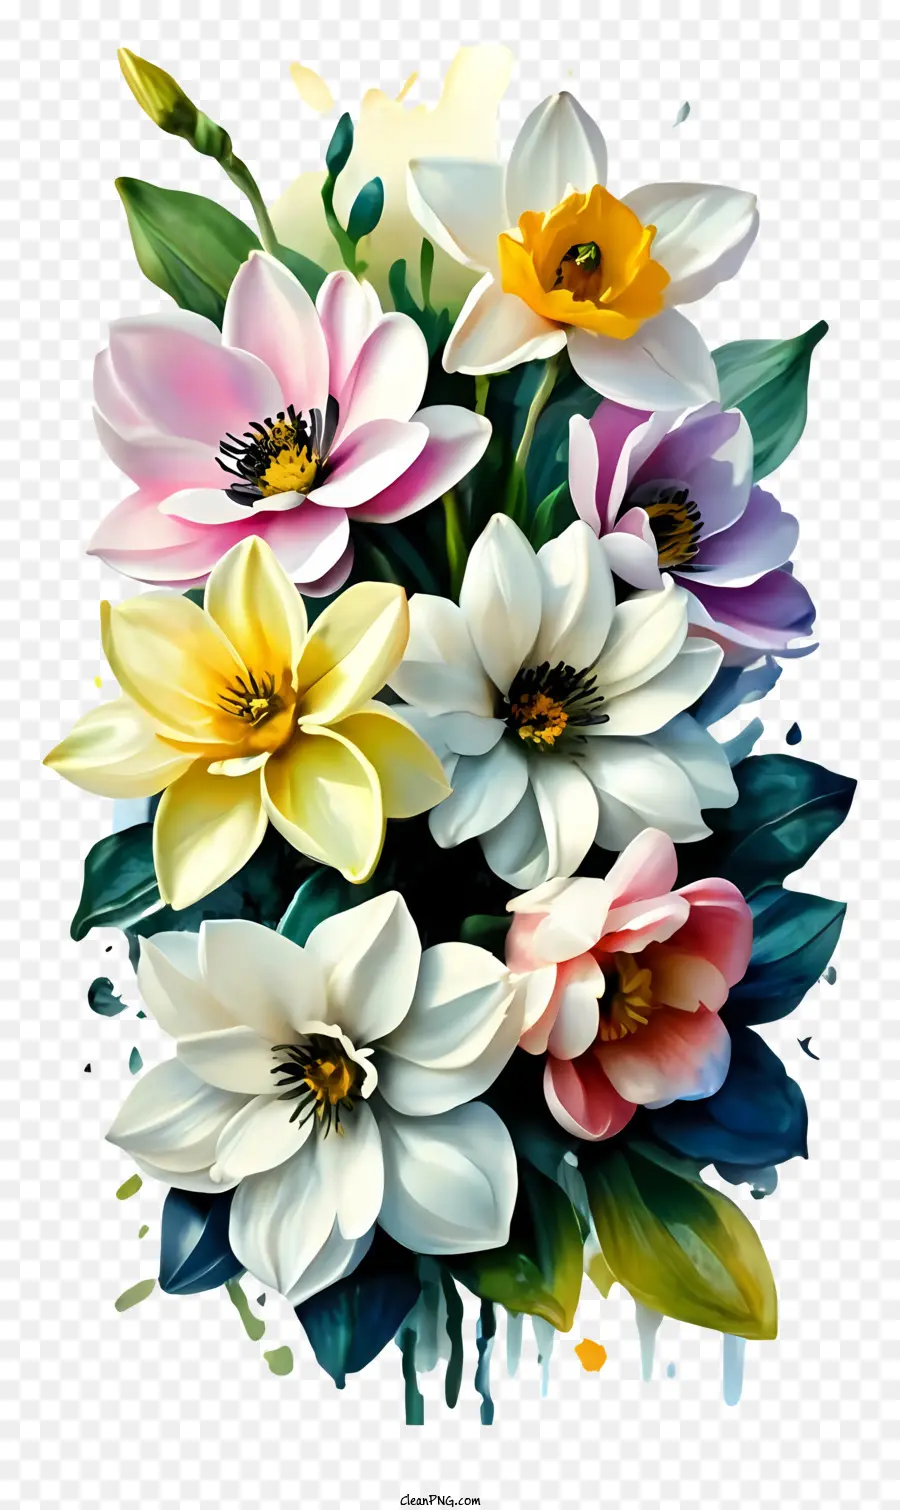 Cartoonmalerei Bouquet Bunte Blumen schwarzer Hintergrund - Buntes Blumenstrauß auf schwarzem Hintergrund